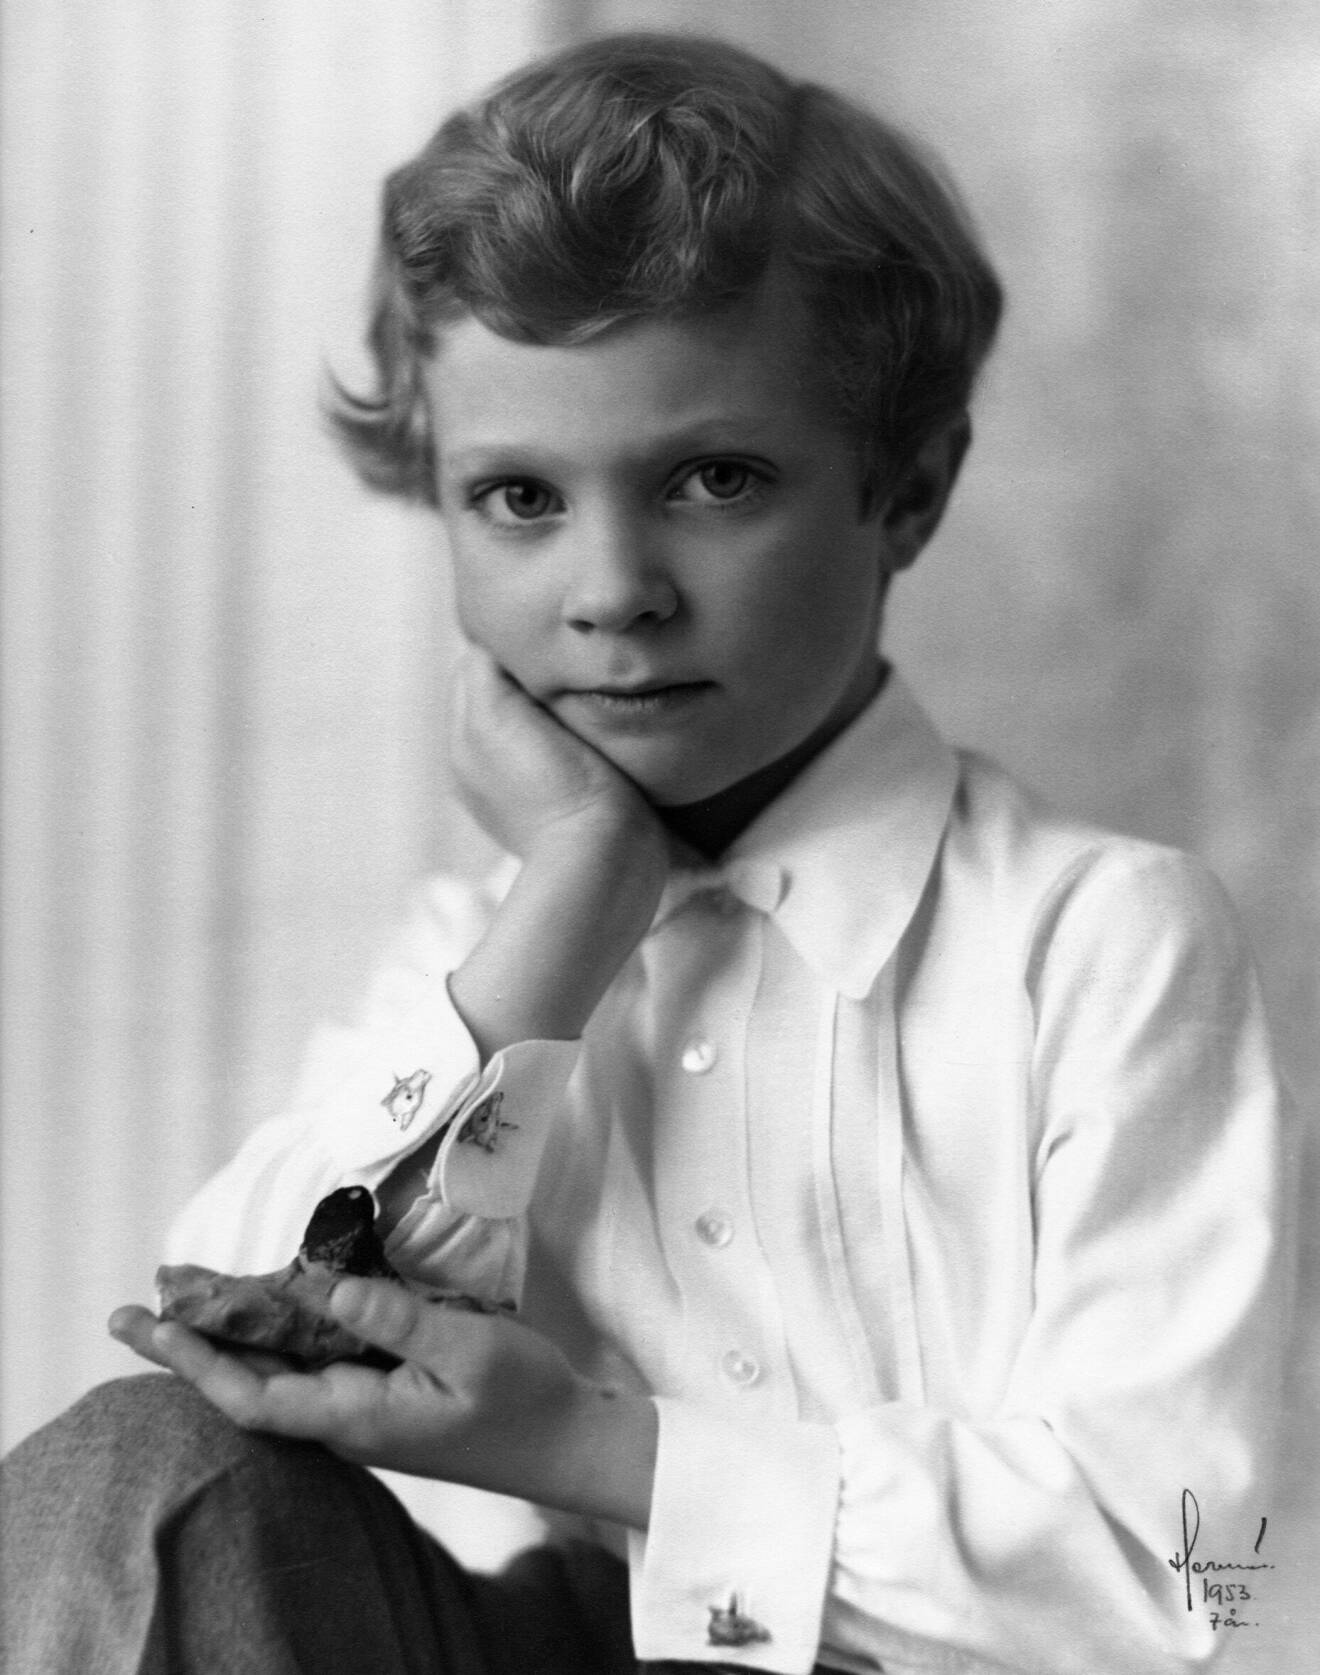 Kungen 7 år som han såg ut på den officiella födelsedagsbilden 1953